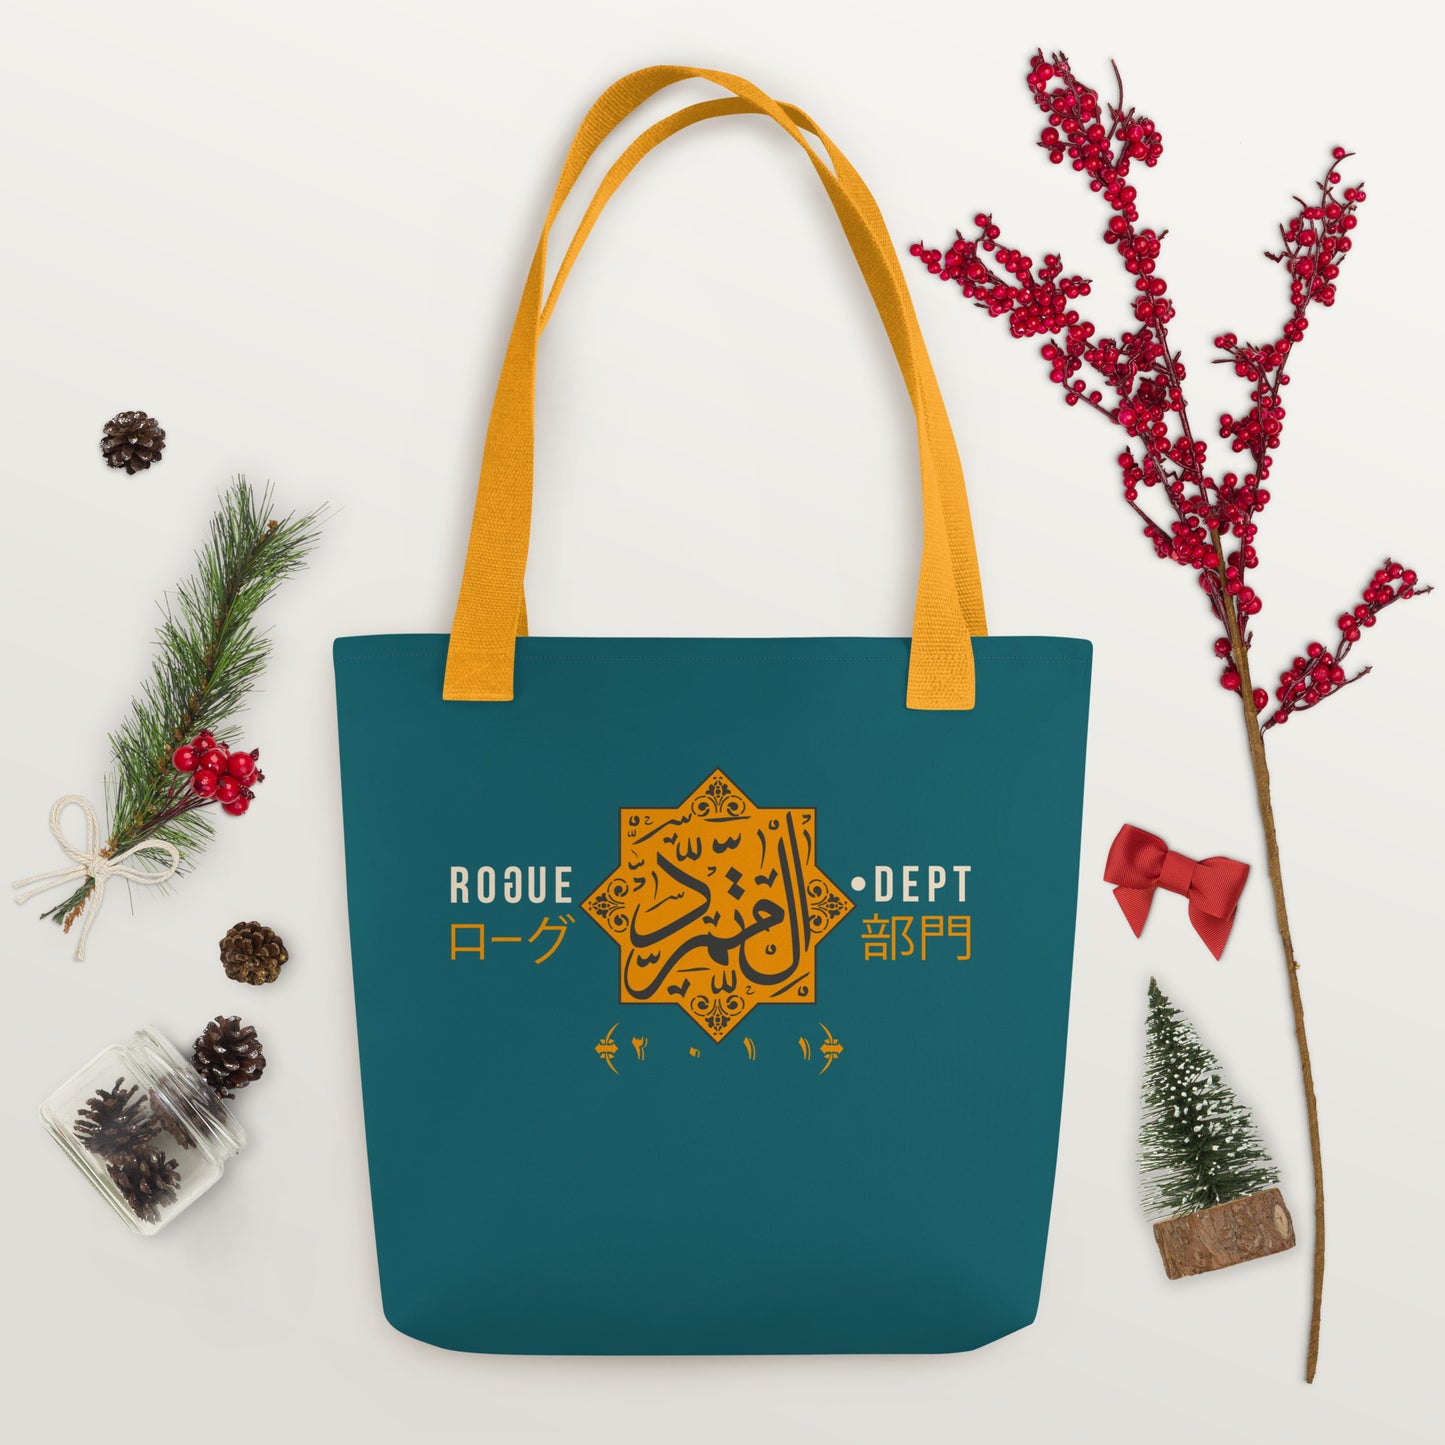 Arab Rogue bag